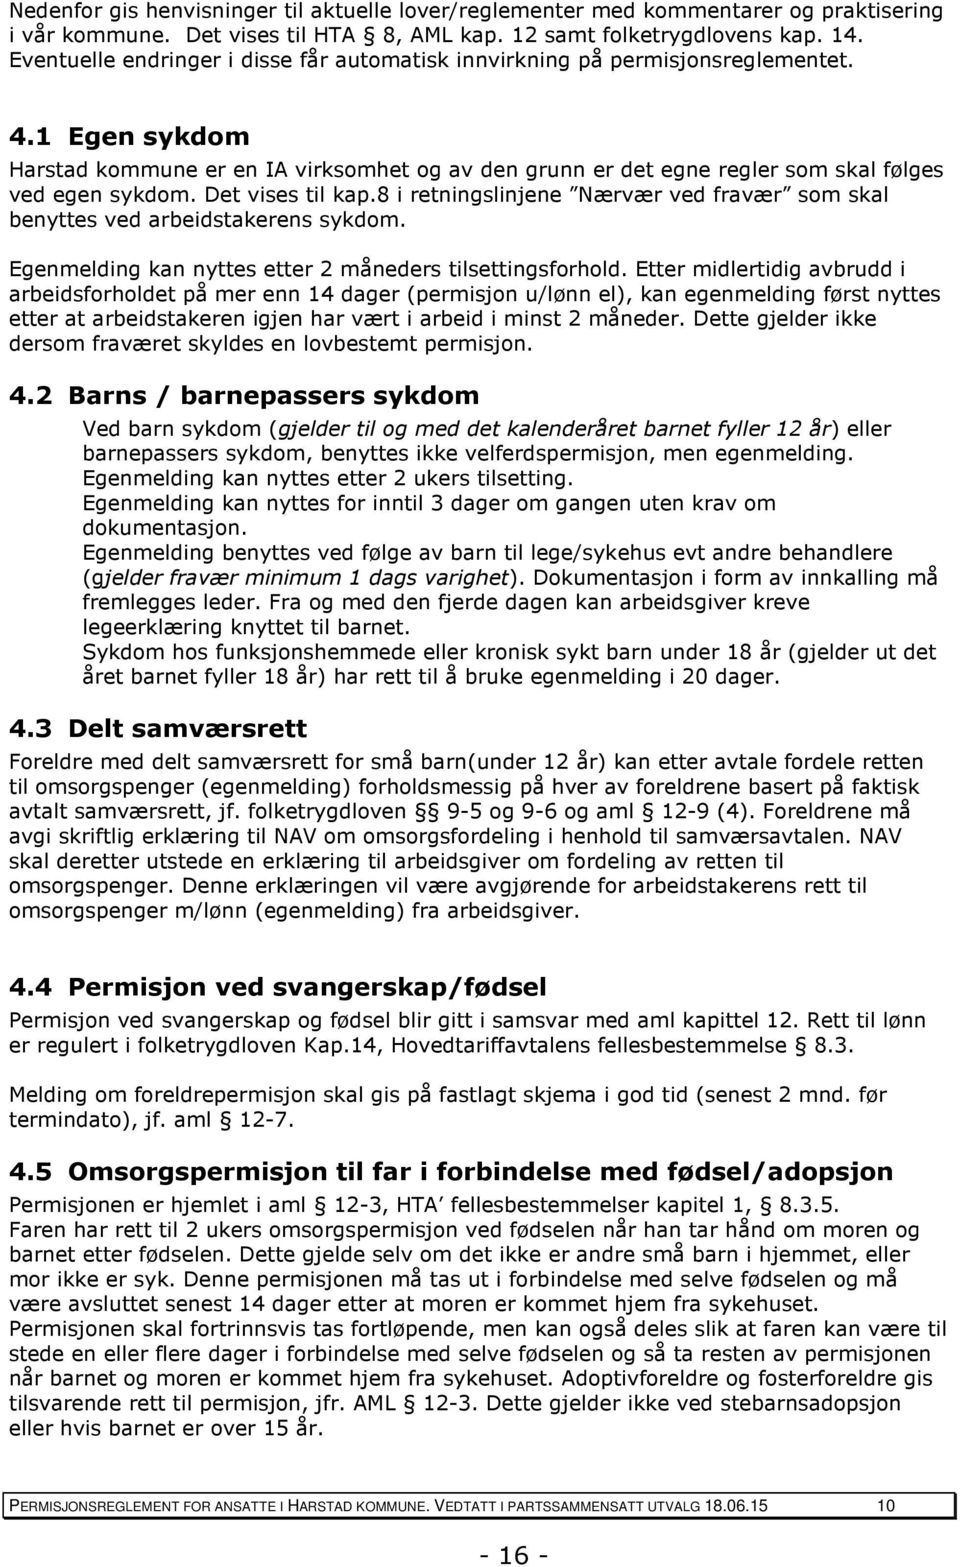 1 Egen sykdom Harstad kommune er en IA virksomhet og av den grunn er det egne regler som skal følges ved egen sykdom. Det vises til kap.